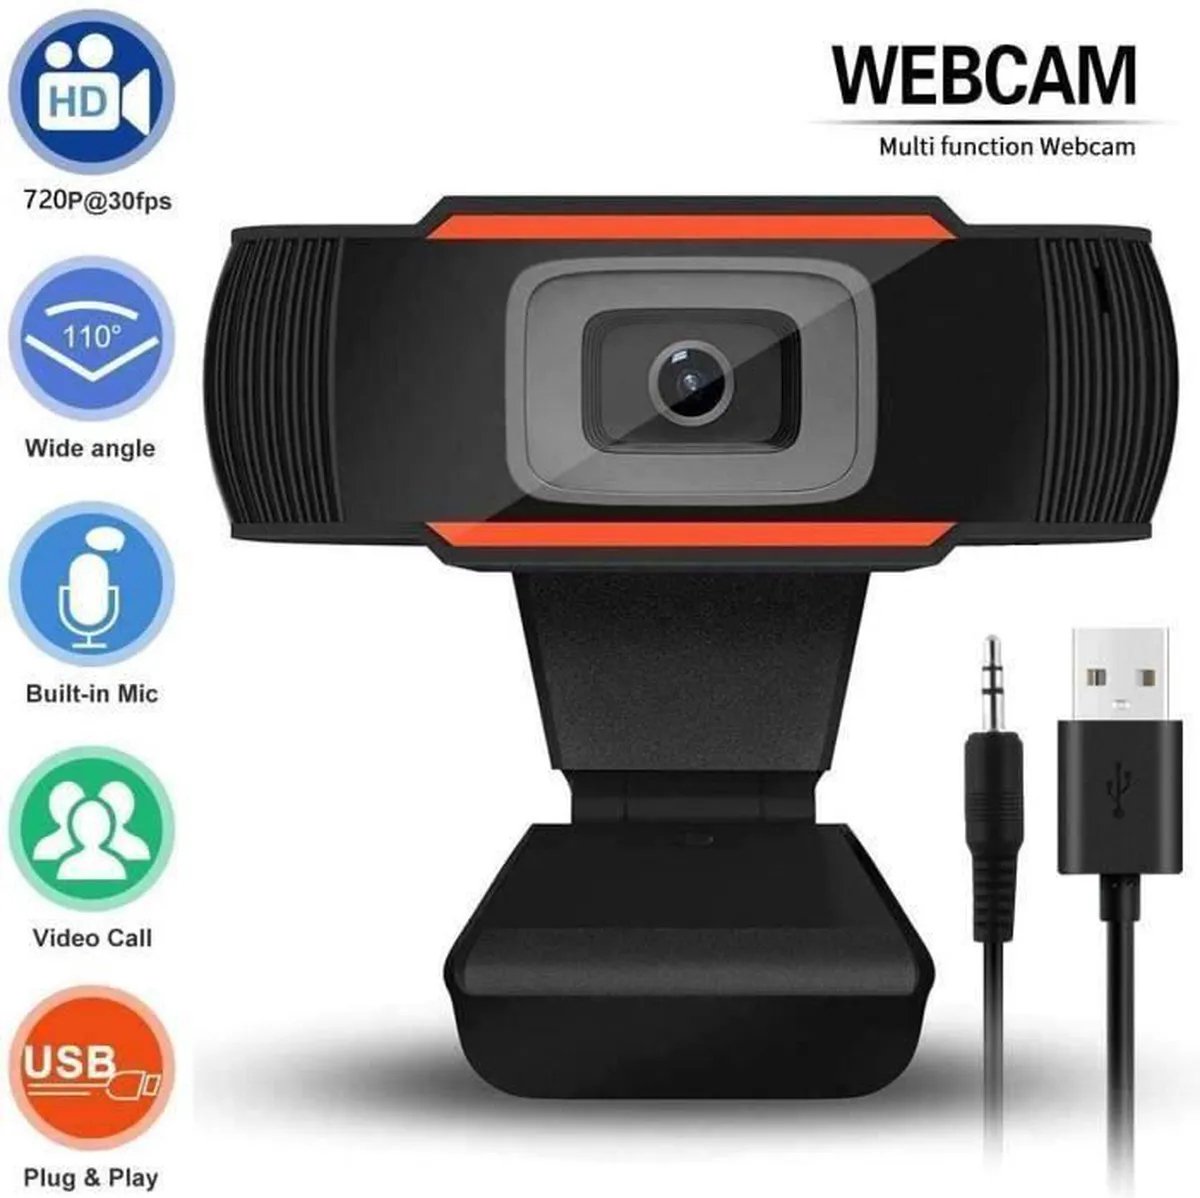 Webcam voor Laptop / Desktop computer met ingebouwde microfoon Compatibel met Windows & Macbook - Laptop Camera USB Plug and Play voor pc Mac Youtube Zoom Skype